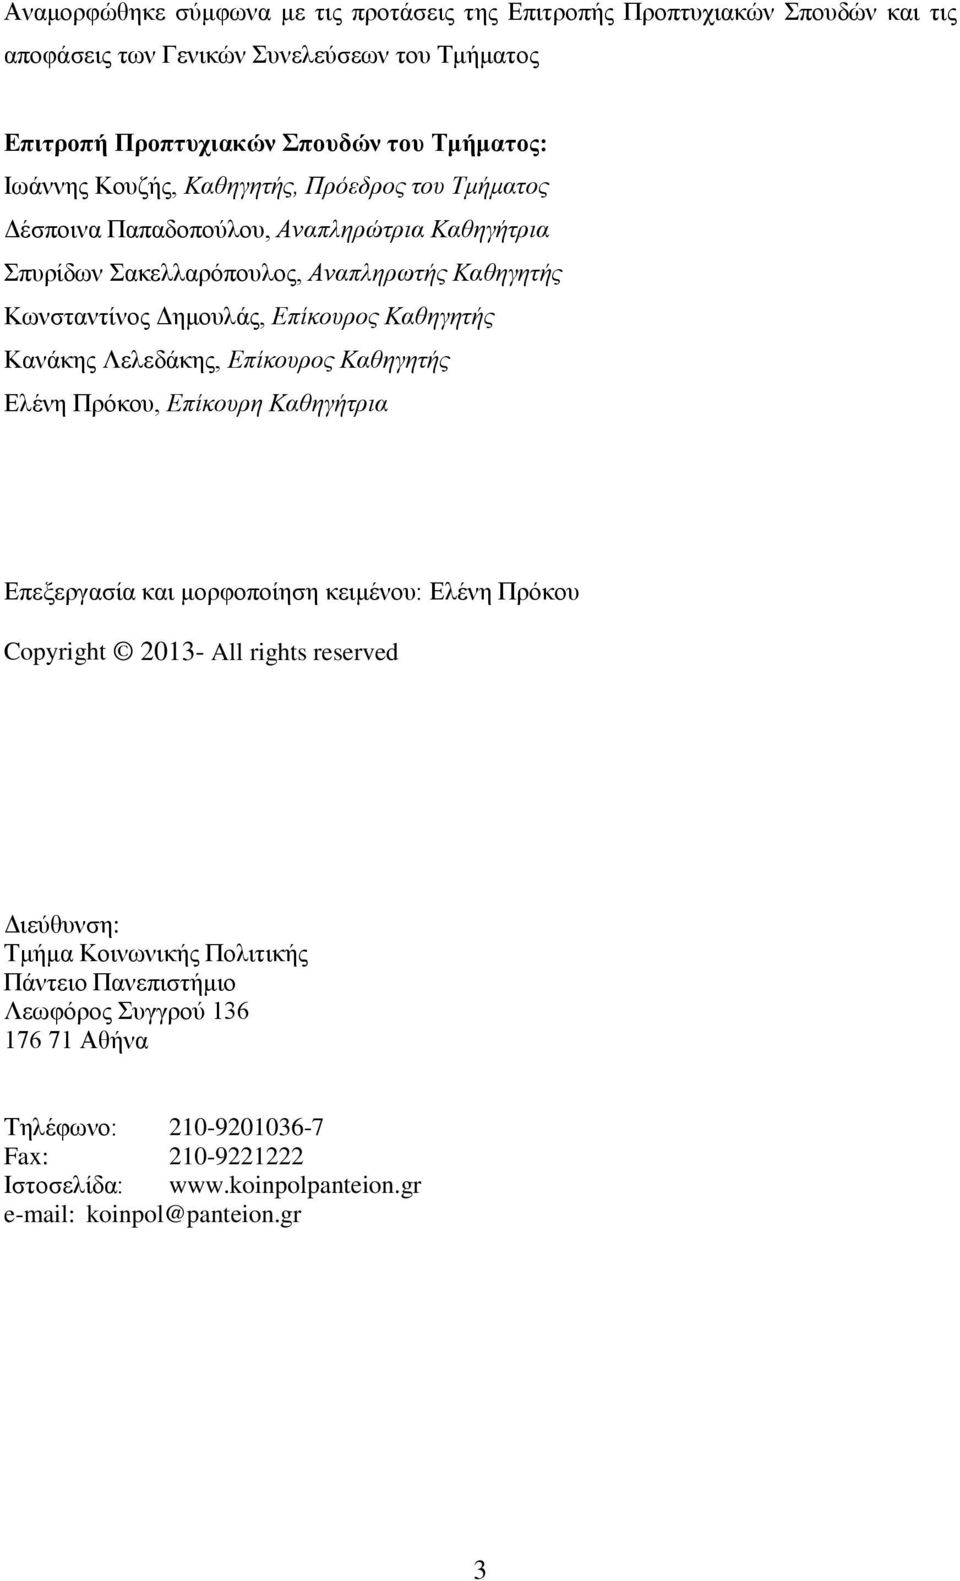 Κανάκης Λελεδάκης, Επίκουρος Καθηγητής Ελένη Πρόκου, Επίκουρη Καθηγήτρια Επεξεργασία και μορφοποίηση κειμένου: Ελένη Πρόκου Copyright 2013- All rights reserved Διεύθυνση: Τμήμα